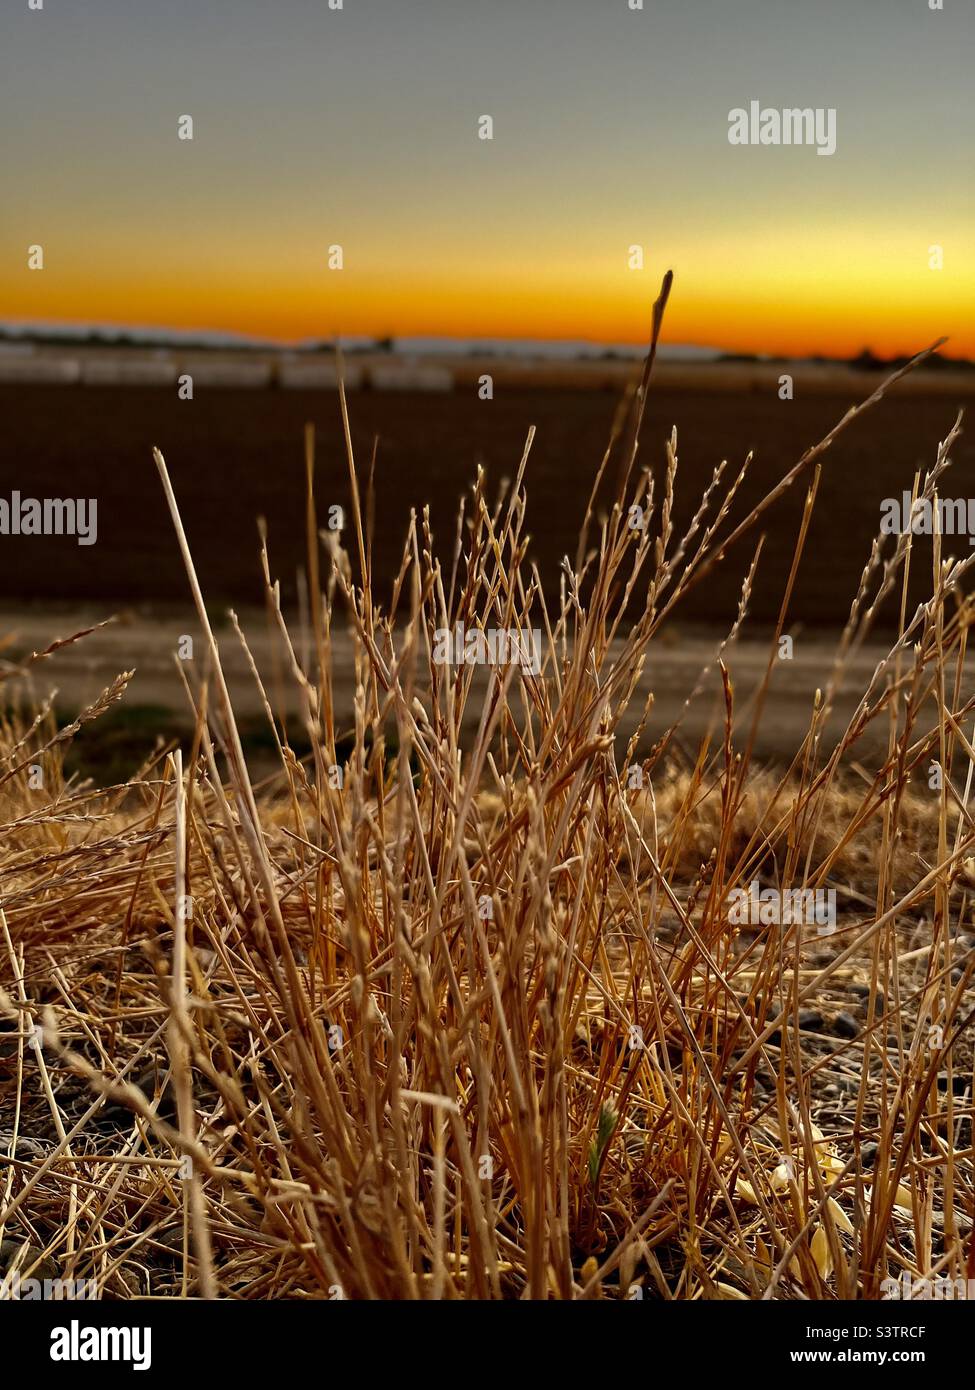 Erba marrone unica focalizzata con la modalità ritratto su iPhone. Bellissimo sfondo del tramonto della California. Foto Stock